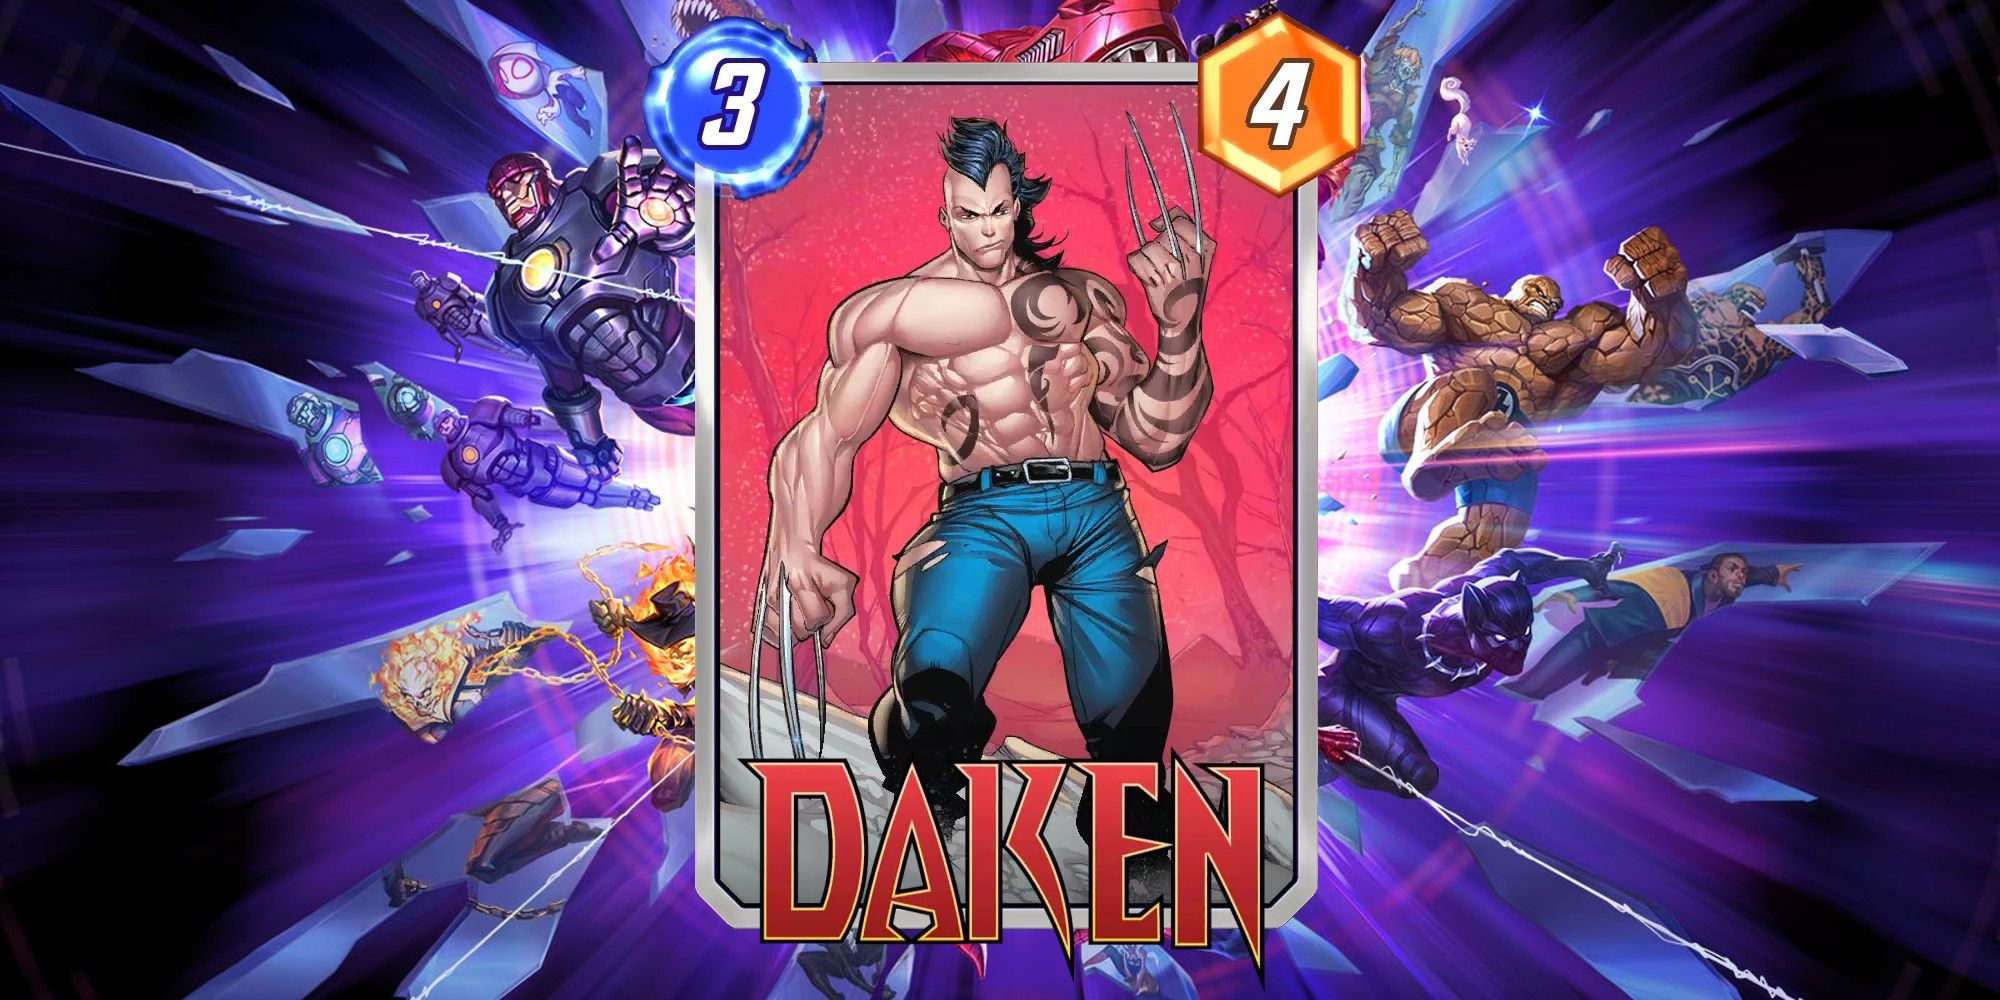 Daken's card